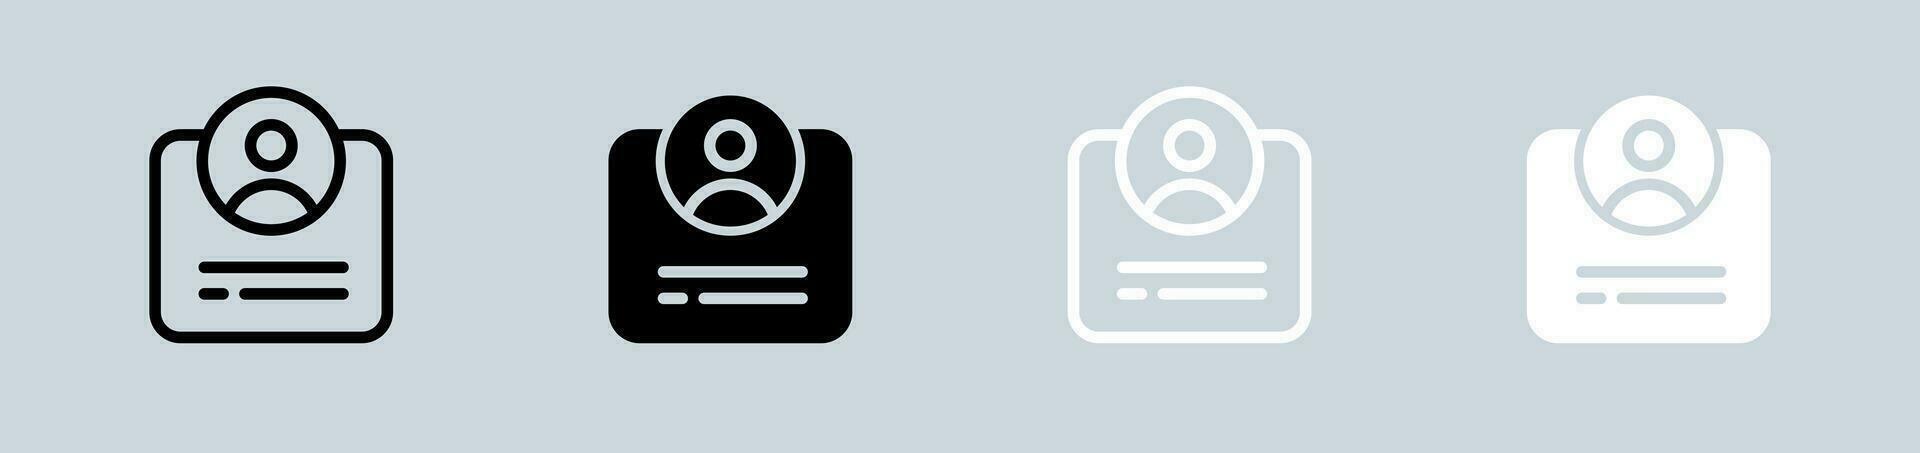 registrering ikon uppsättning i svart och vit. ny användare tecken vektor illustration.